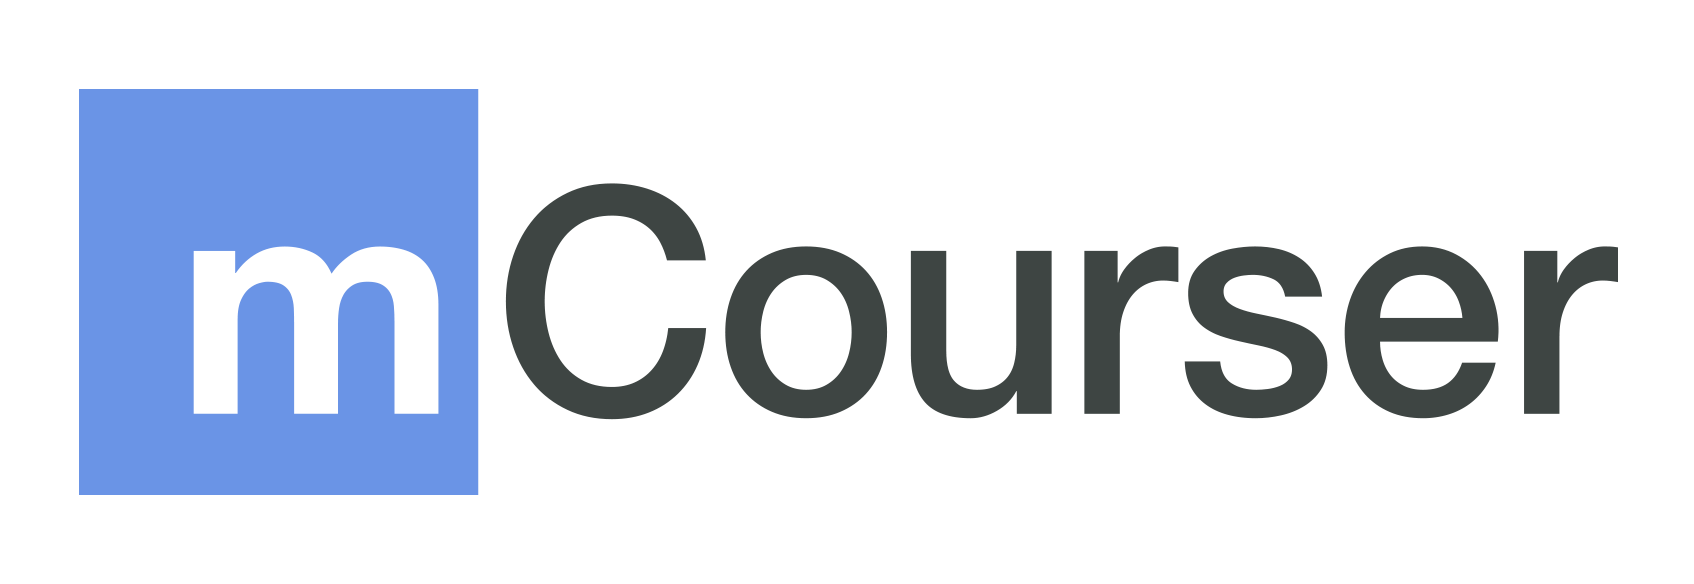 mCourser logo